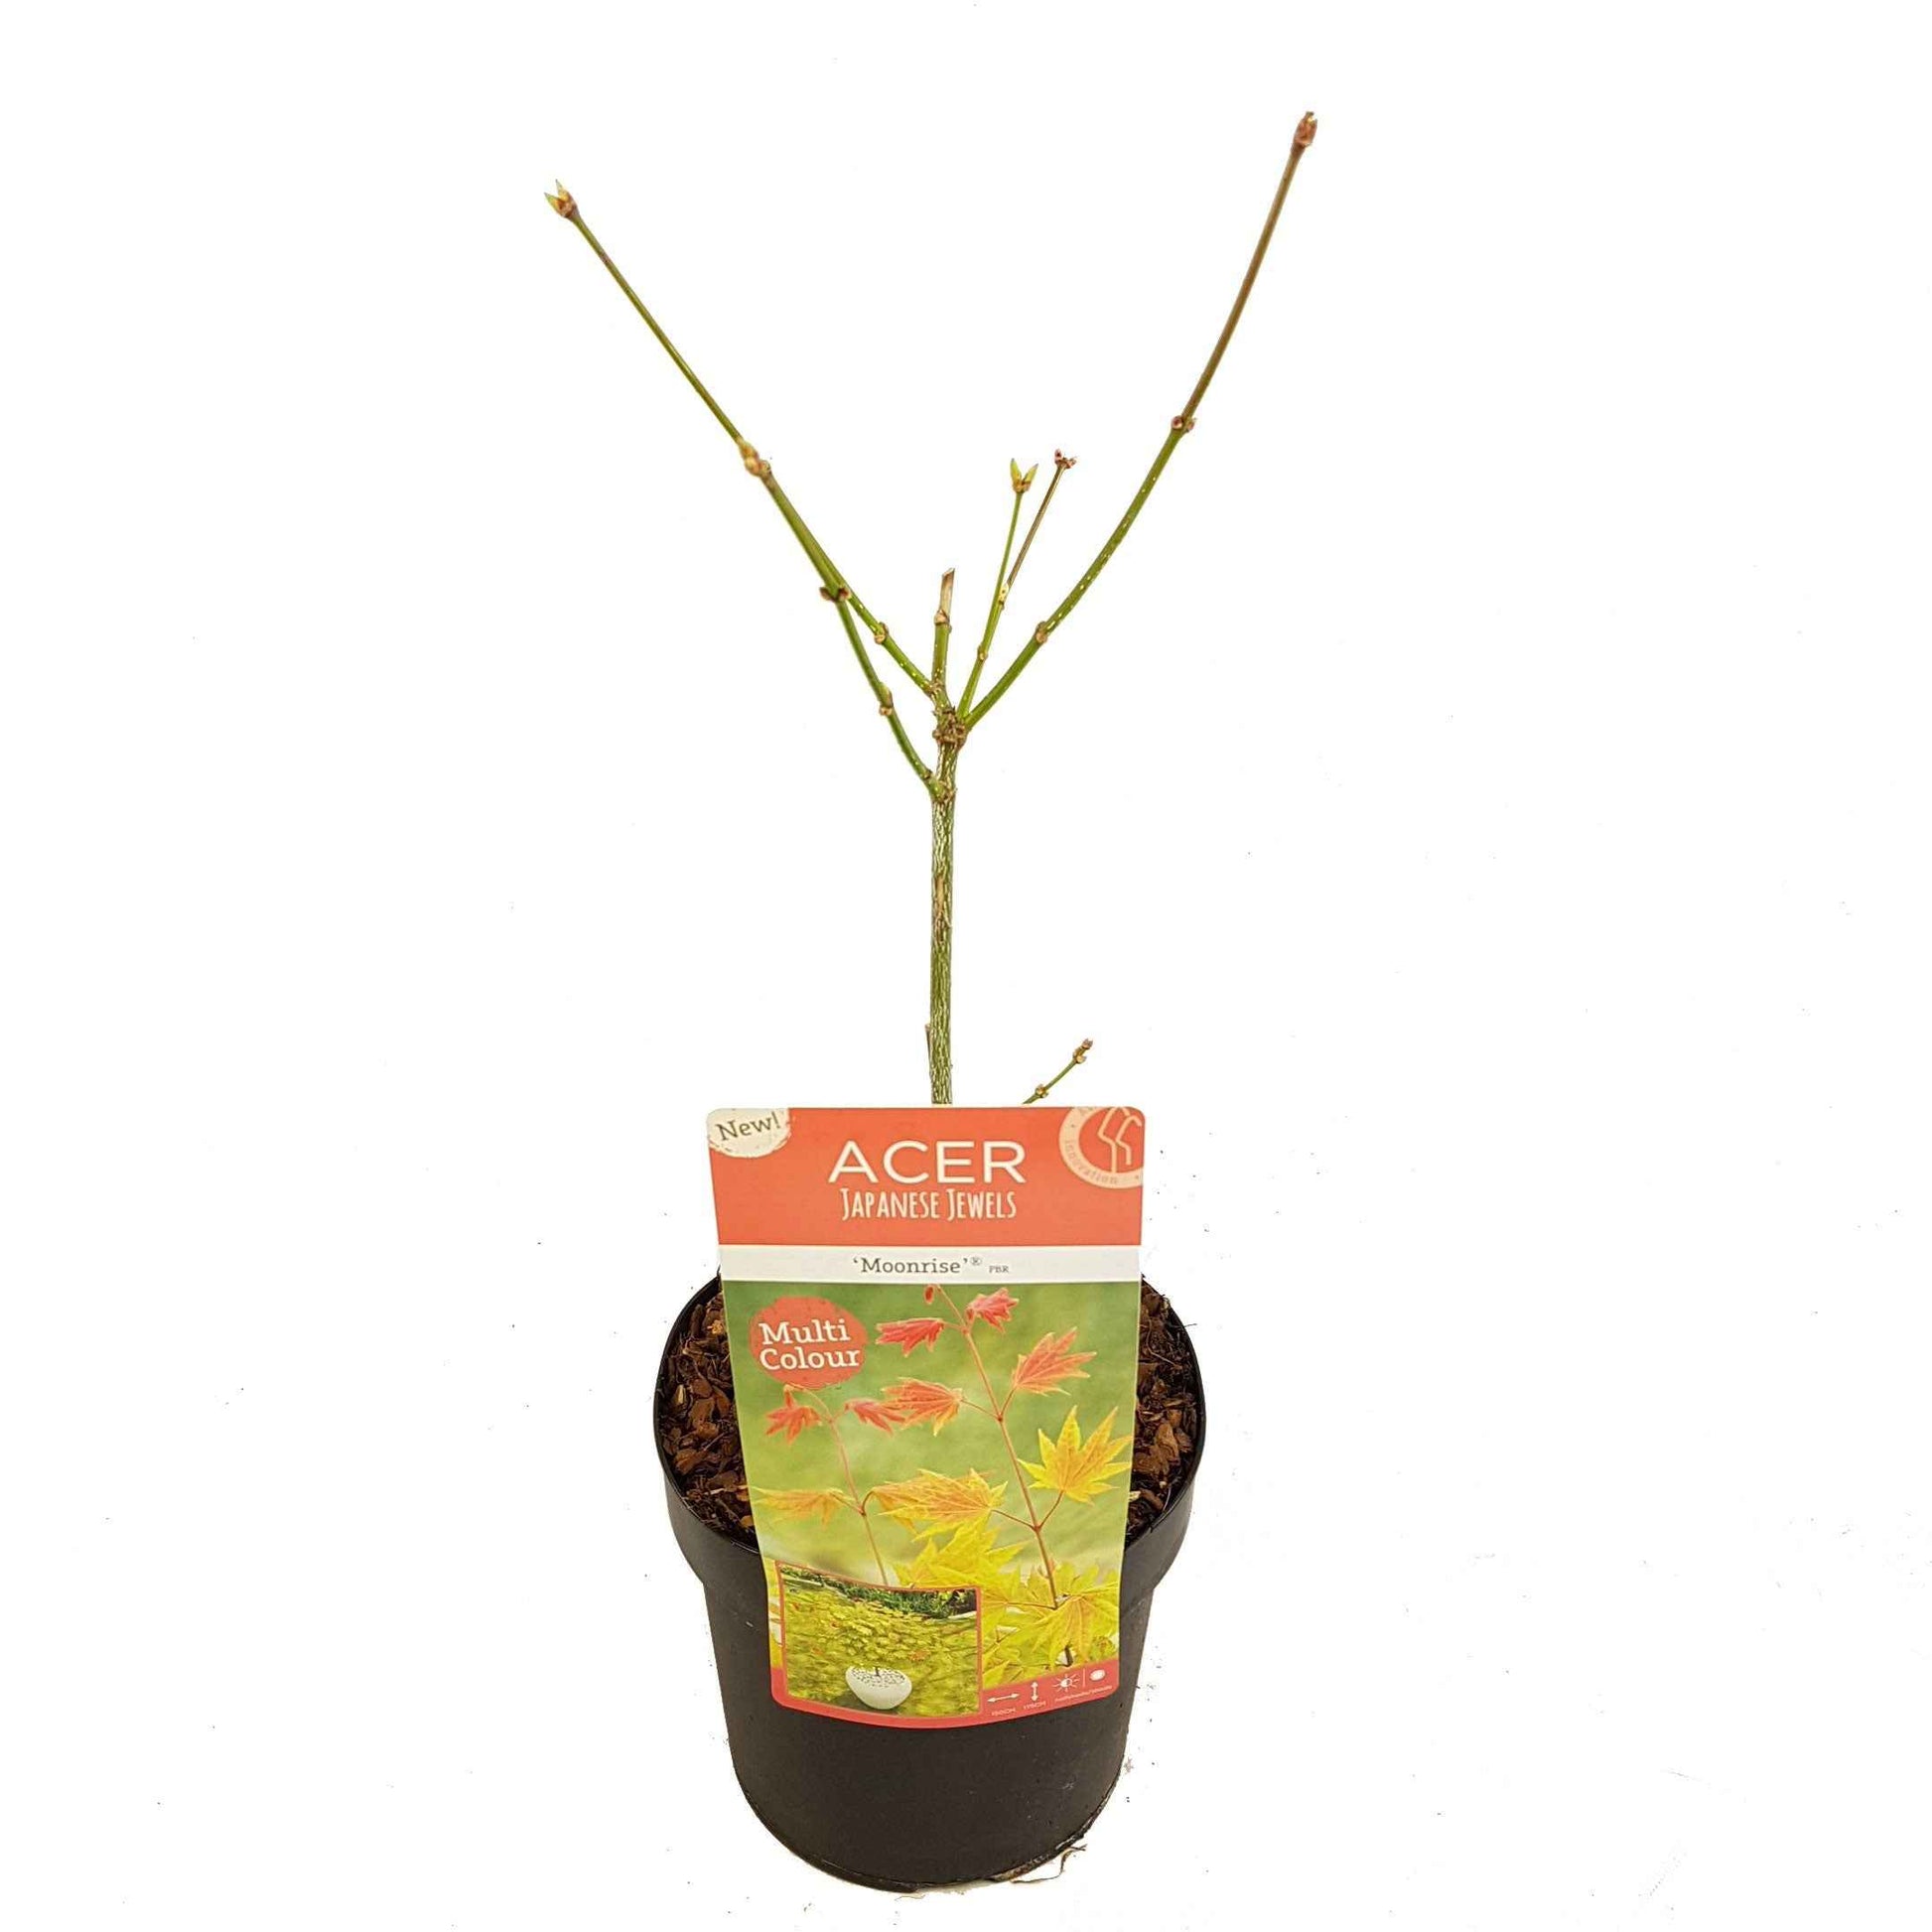 Japanischer Ahorn Acer Moonrise gelb-rot-orange - Winterhart - Pflanzeneigenschaften